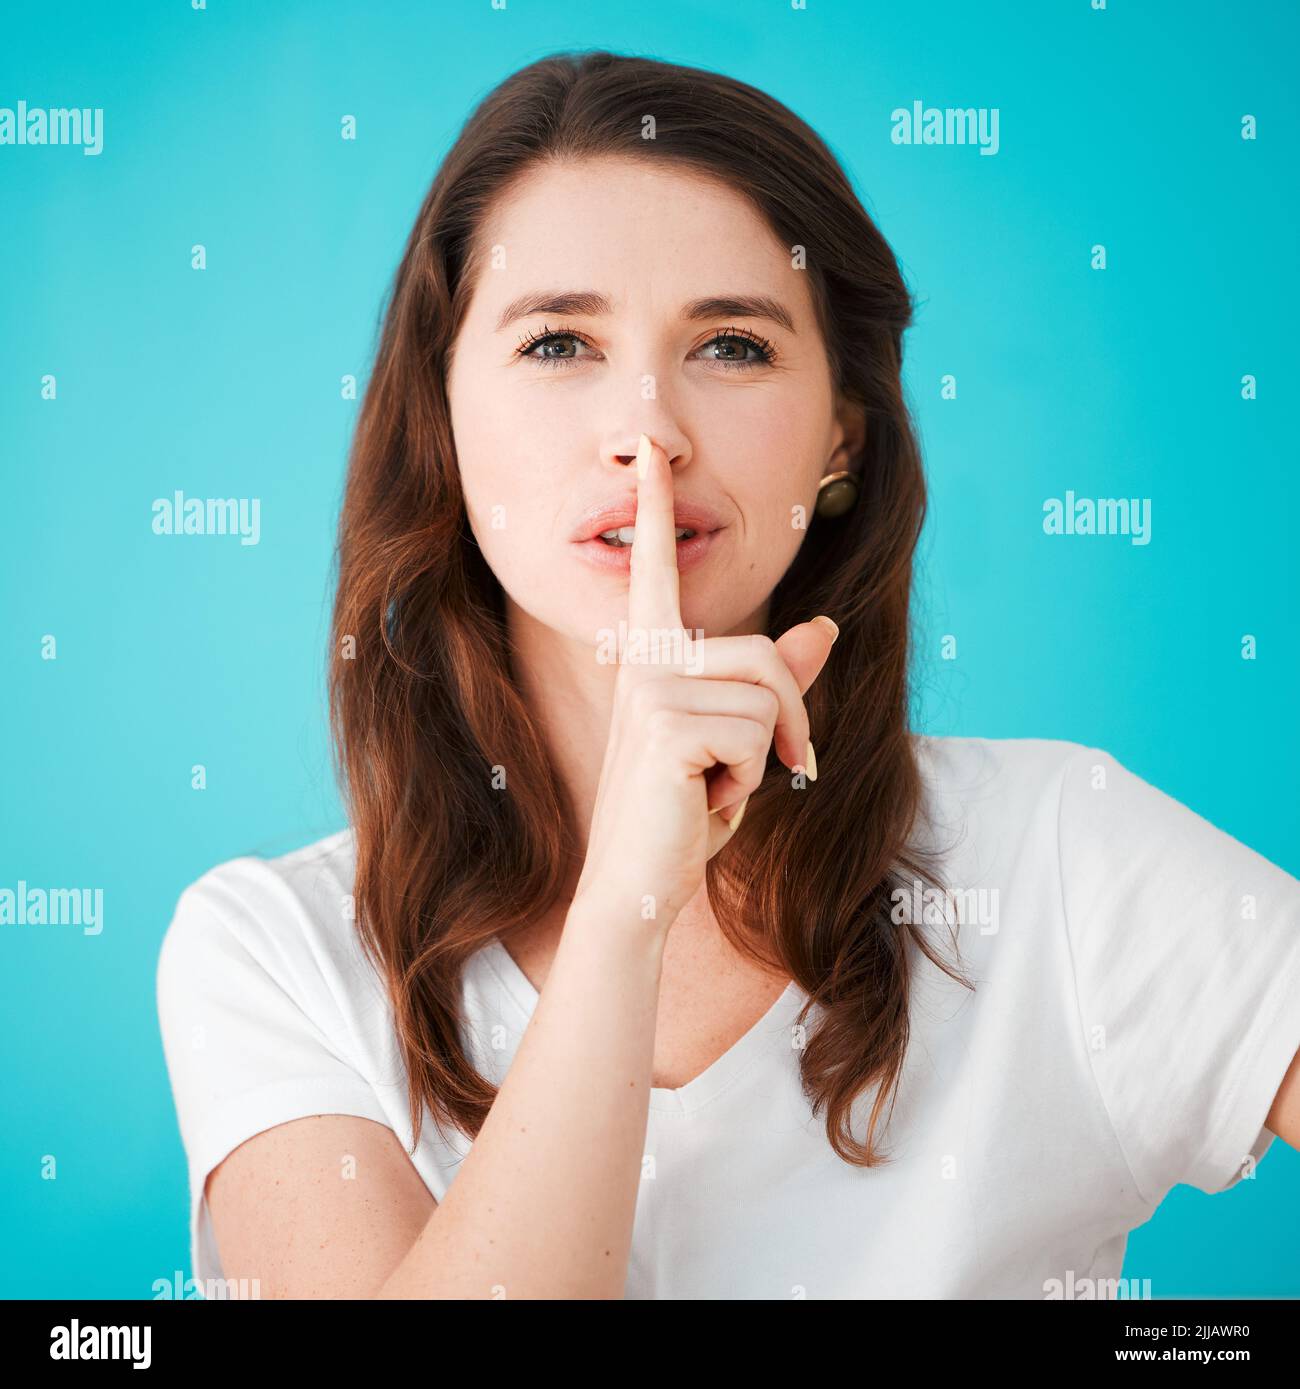 Garons cela entre nous. Portrait studio d'une jeune femme attrayante posant avec son doigt sur ses lèvres sur un fond bleu. Banque D'Images